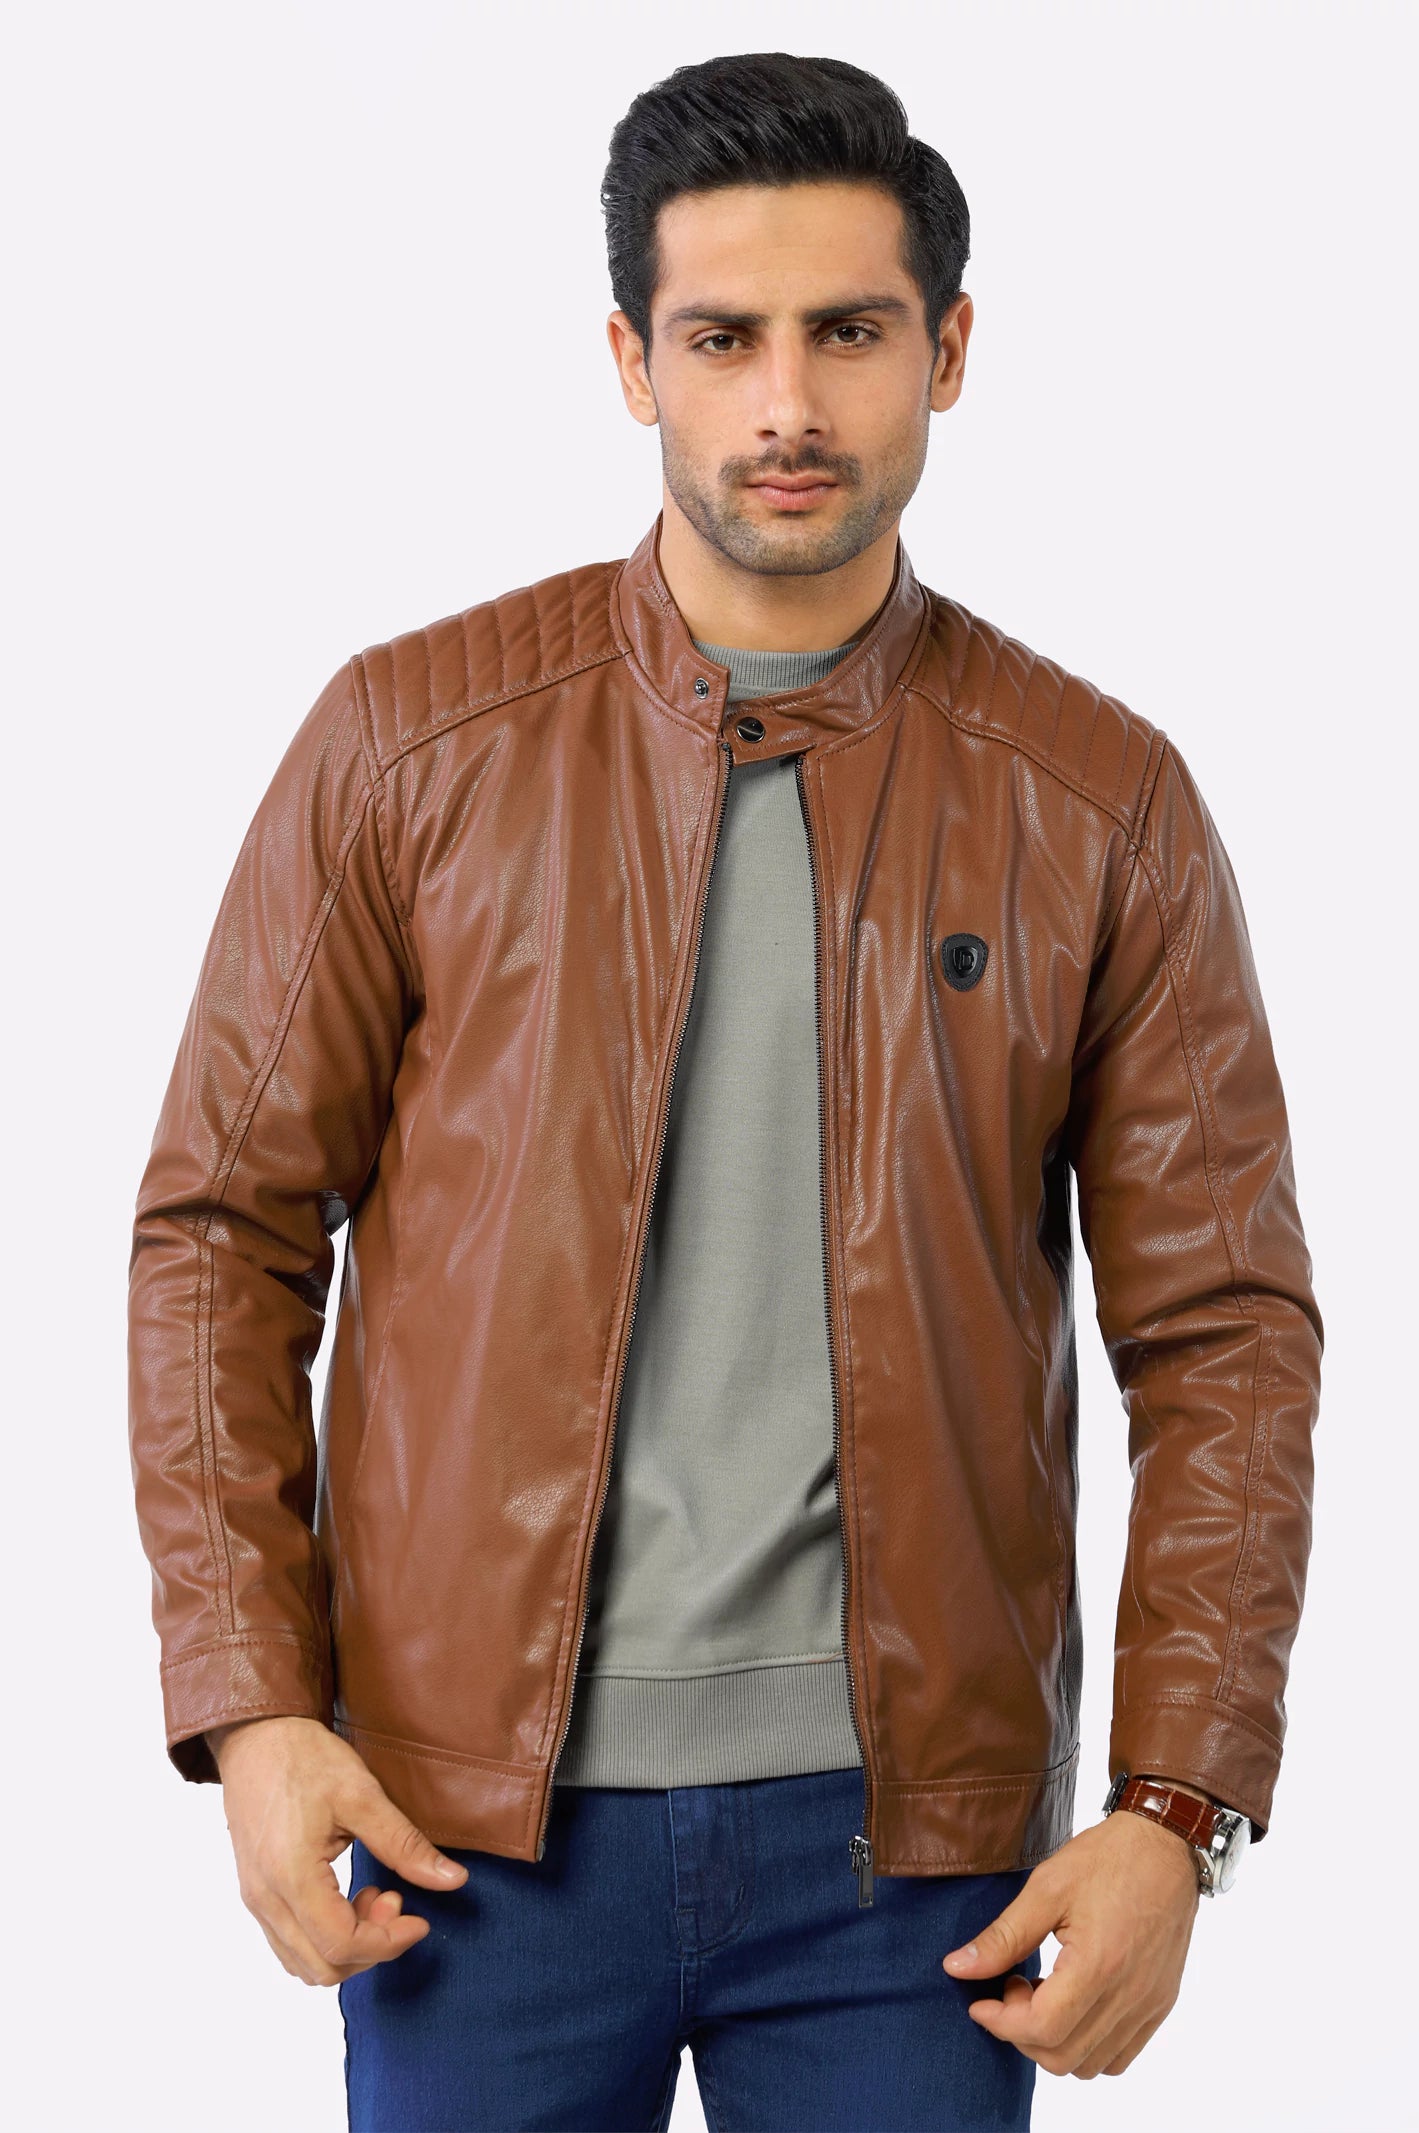 Brown Biker Leather Jacket for Mens